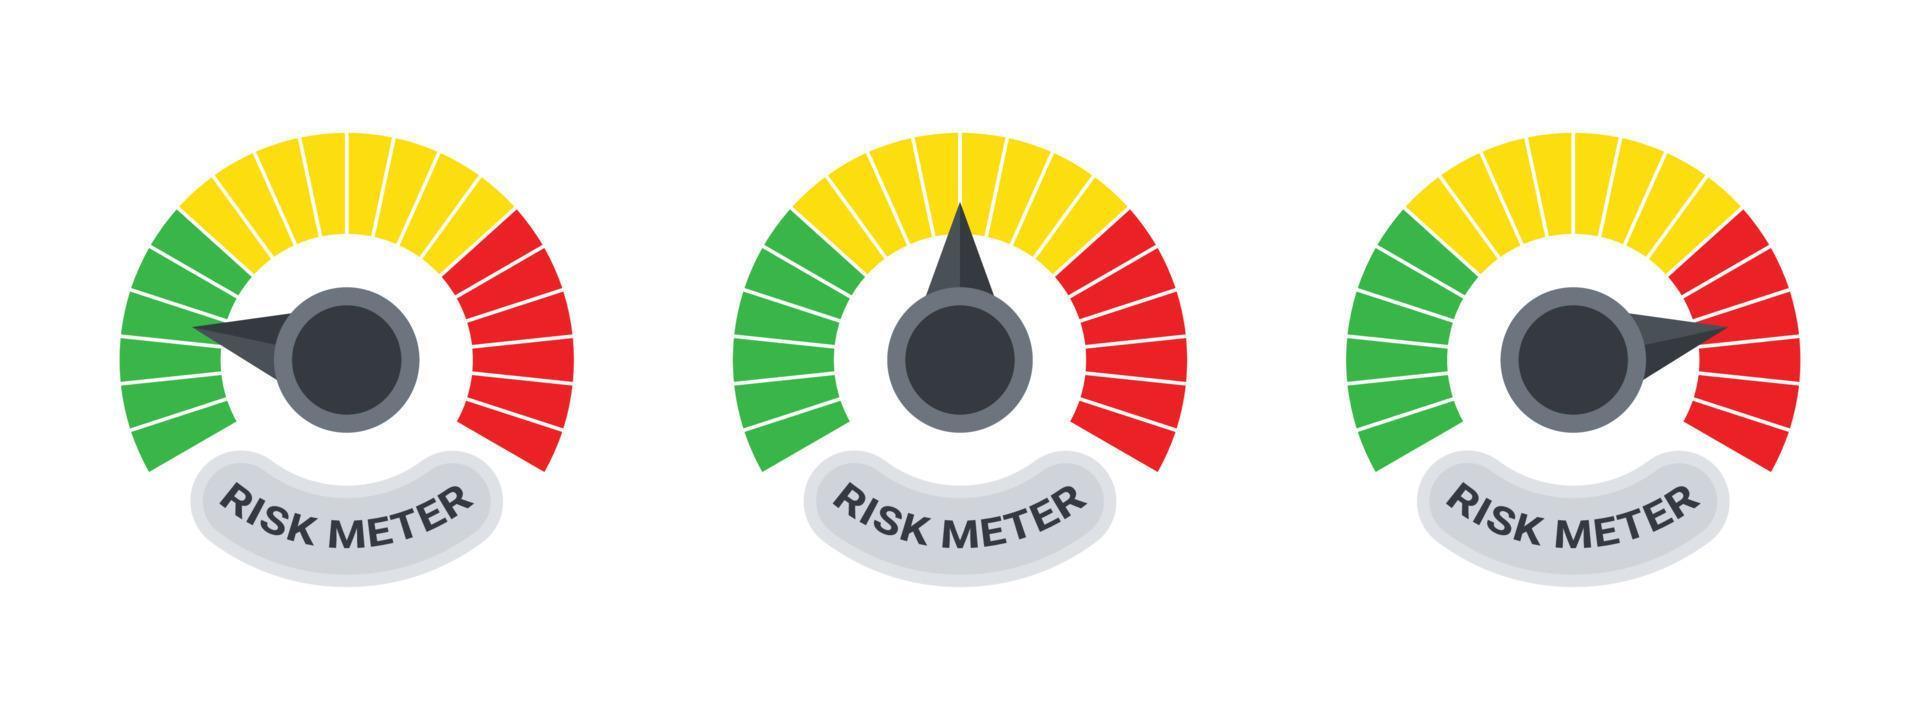 medidor de riesgo iconos de riesgo. señal indicadora de velocidad. concepto de signos de medidor. concepto de rendimiento ilustración vectorial vector